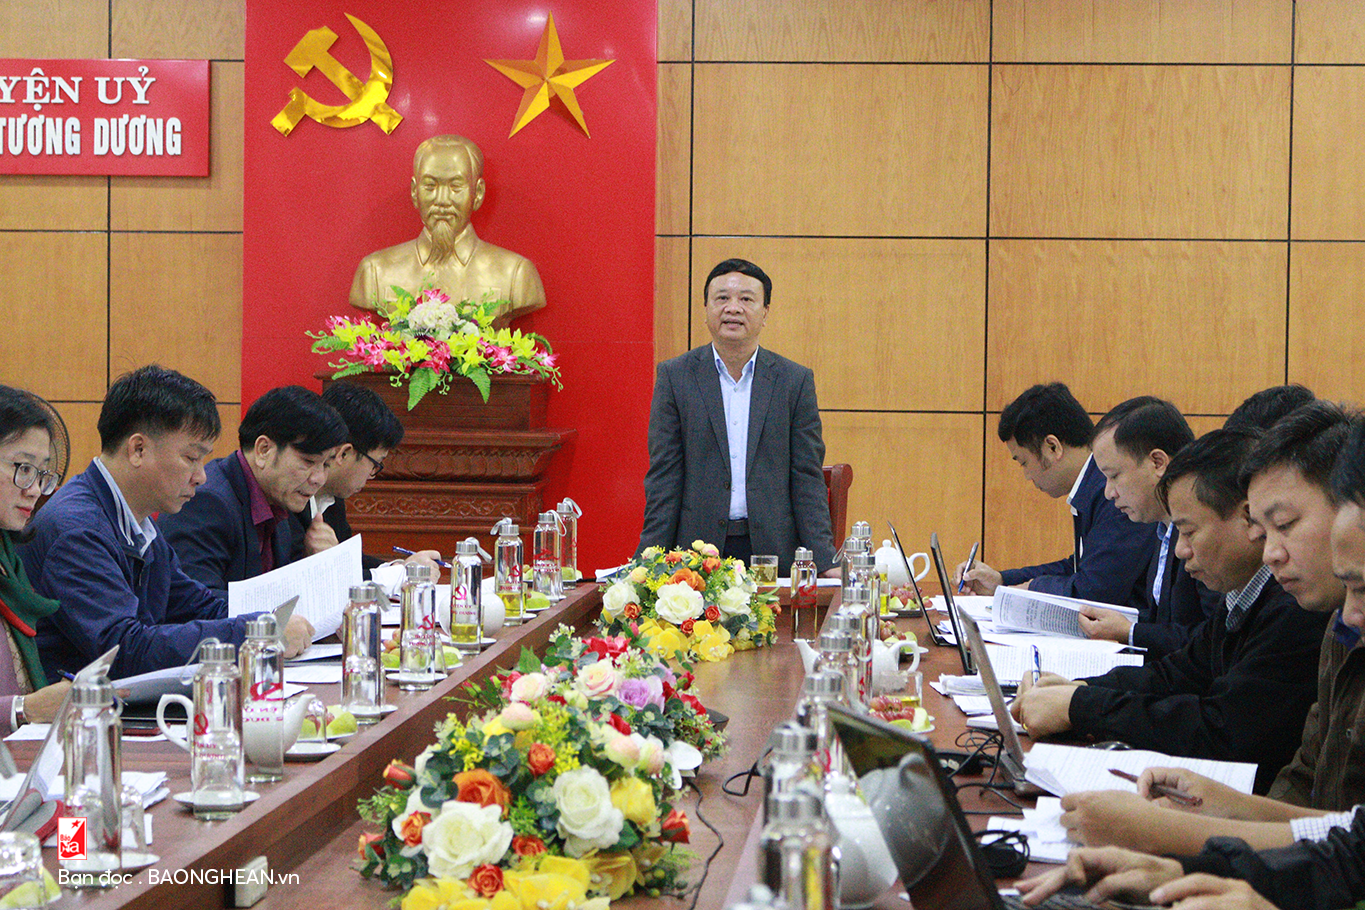 Bí thư Huyện ủy Tương Dương, ông Nguyễn Văn Hải kết luận cuộc họp.